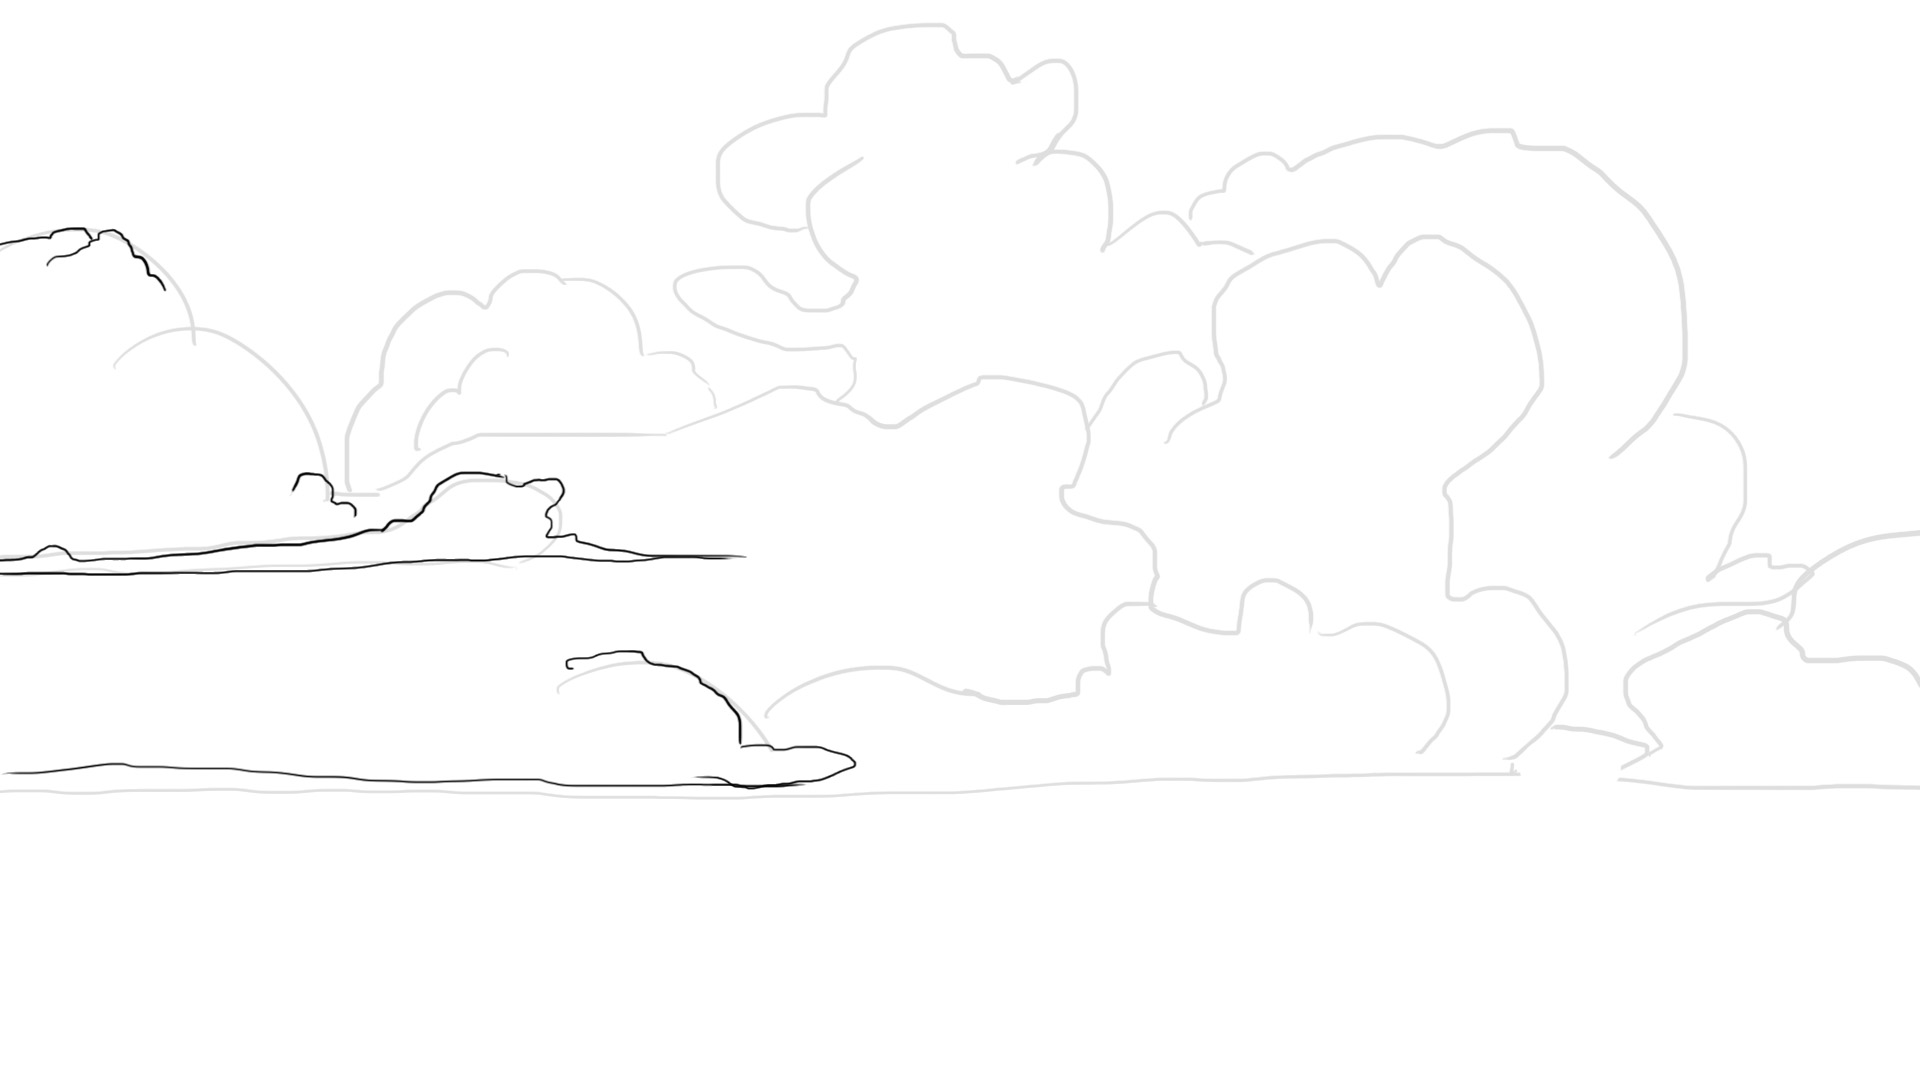 Détails du dessin de nuage dense 